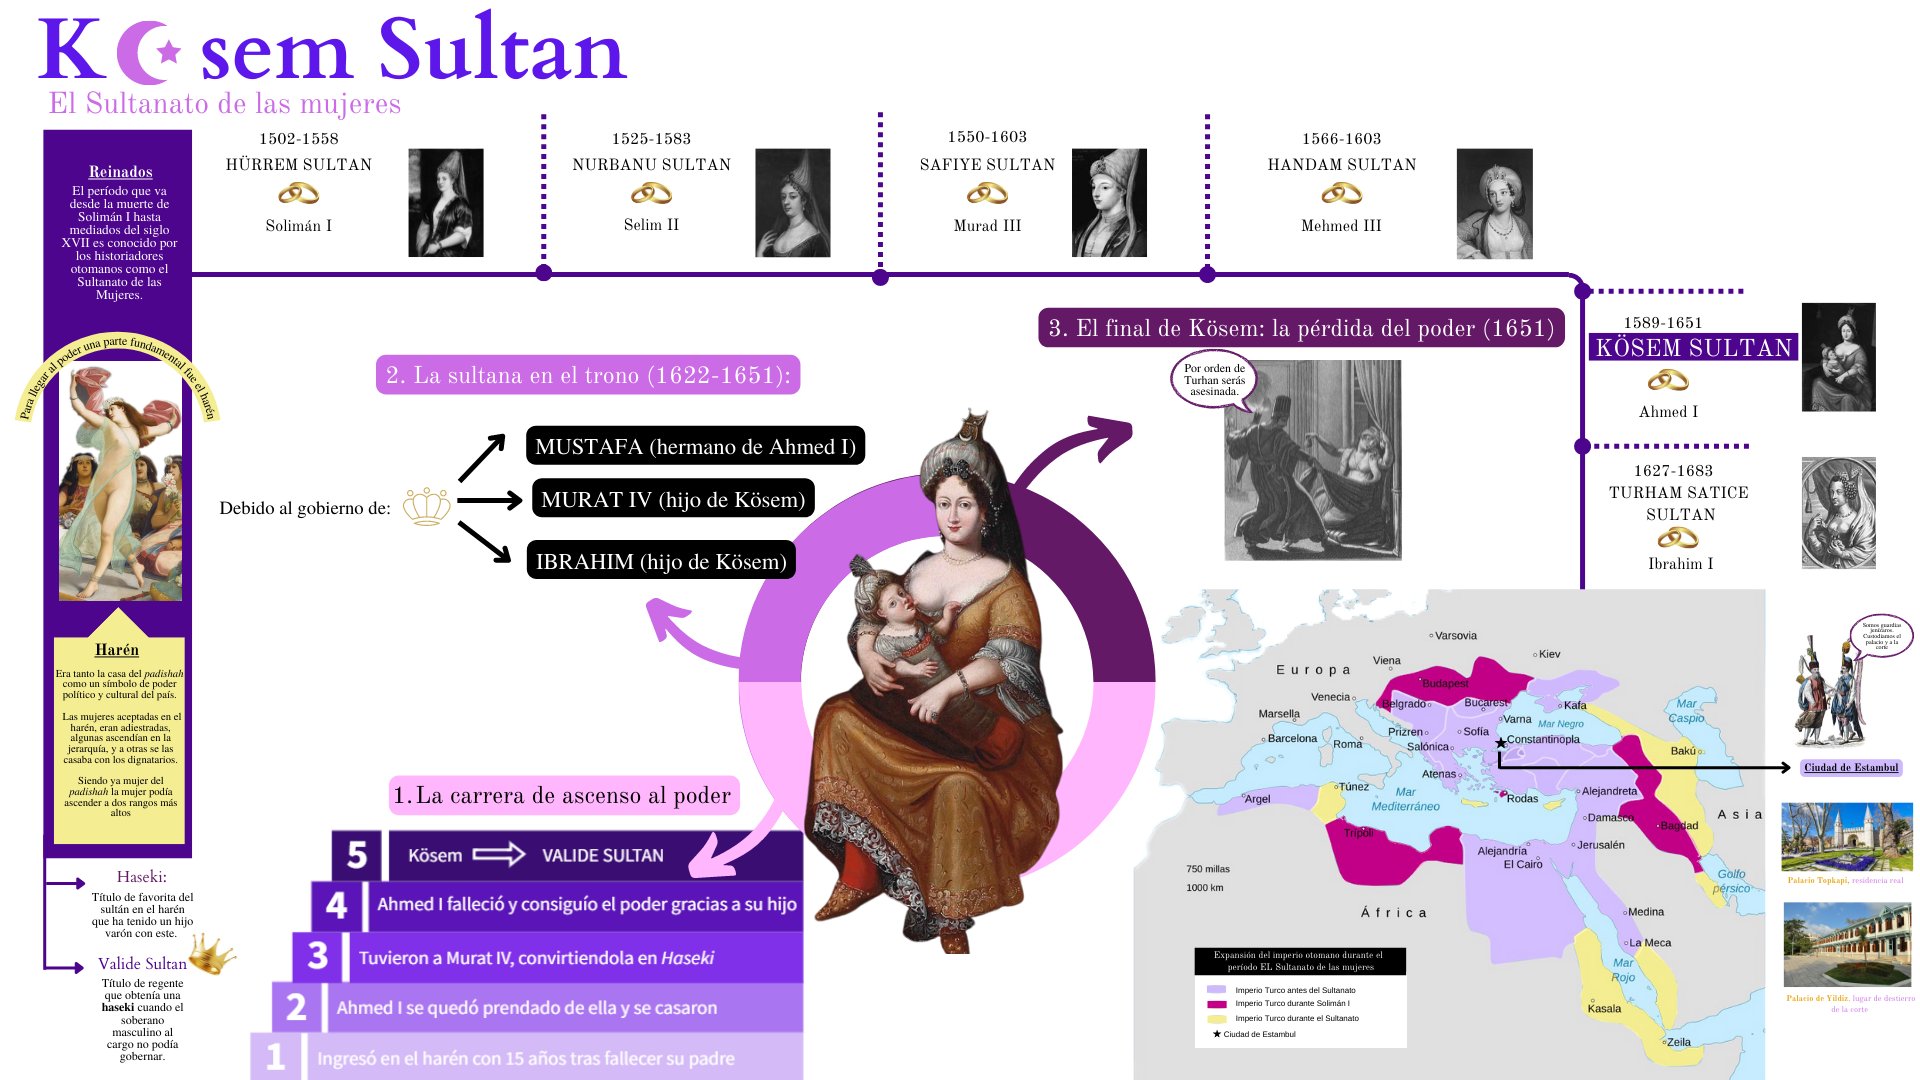 Kösem Sultan: el sultanato de las mujeres